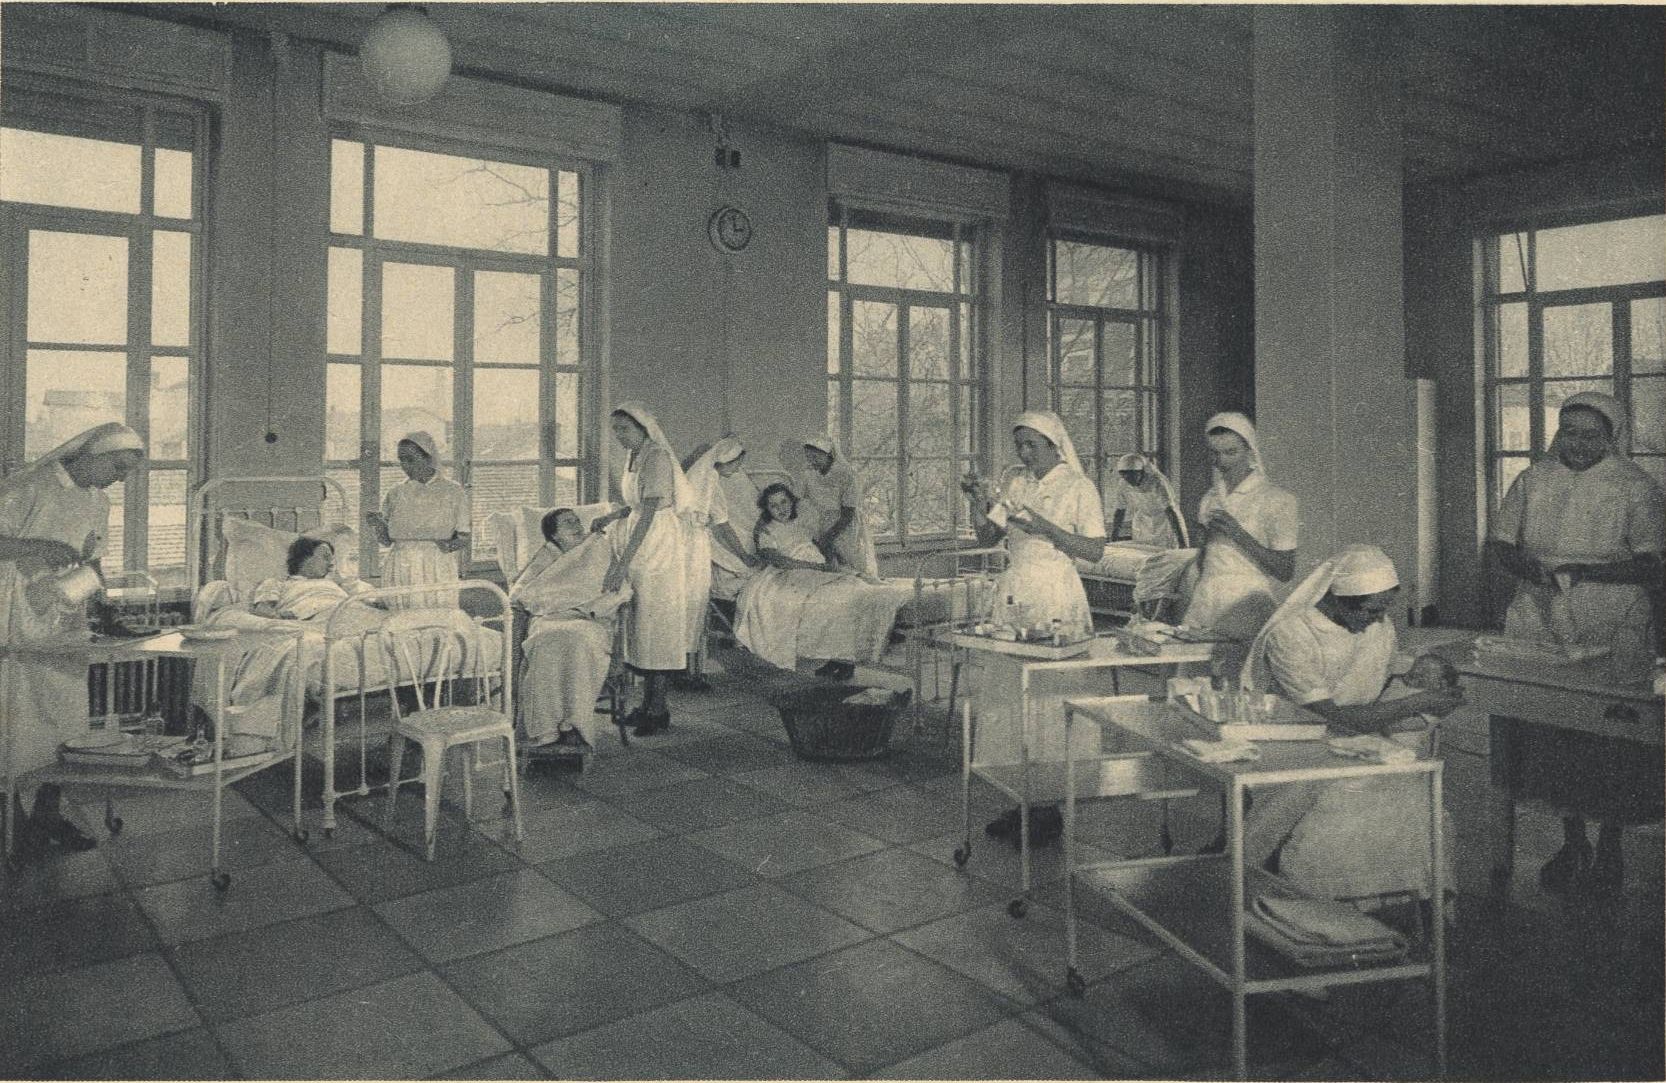 Ecole d'infirmières et de visiteuses de Lyon - La salle de démonstrations : carte postale NB (vers 1940, cote : 4FI/14453)